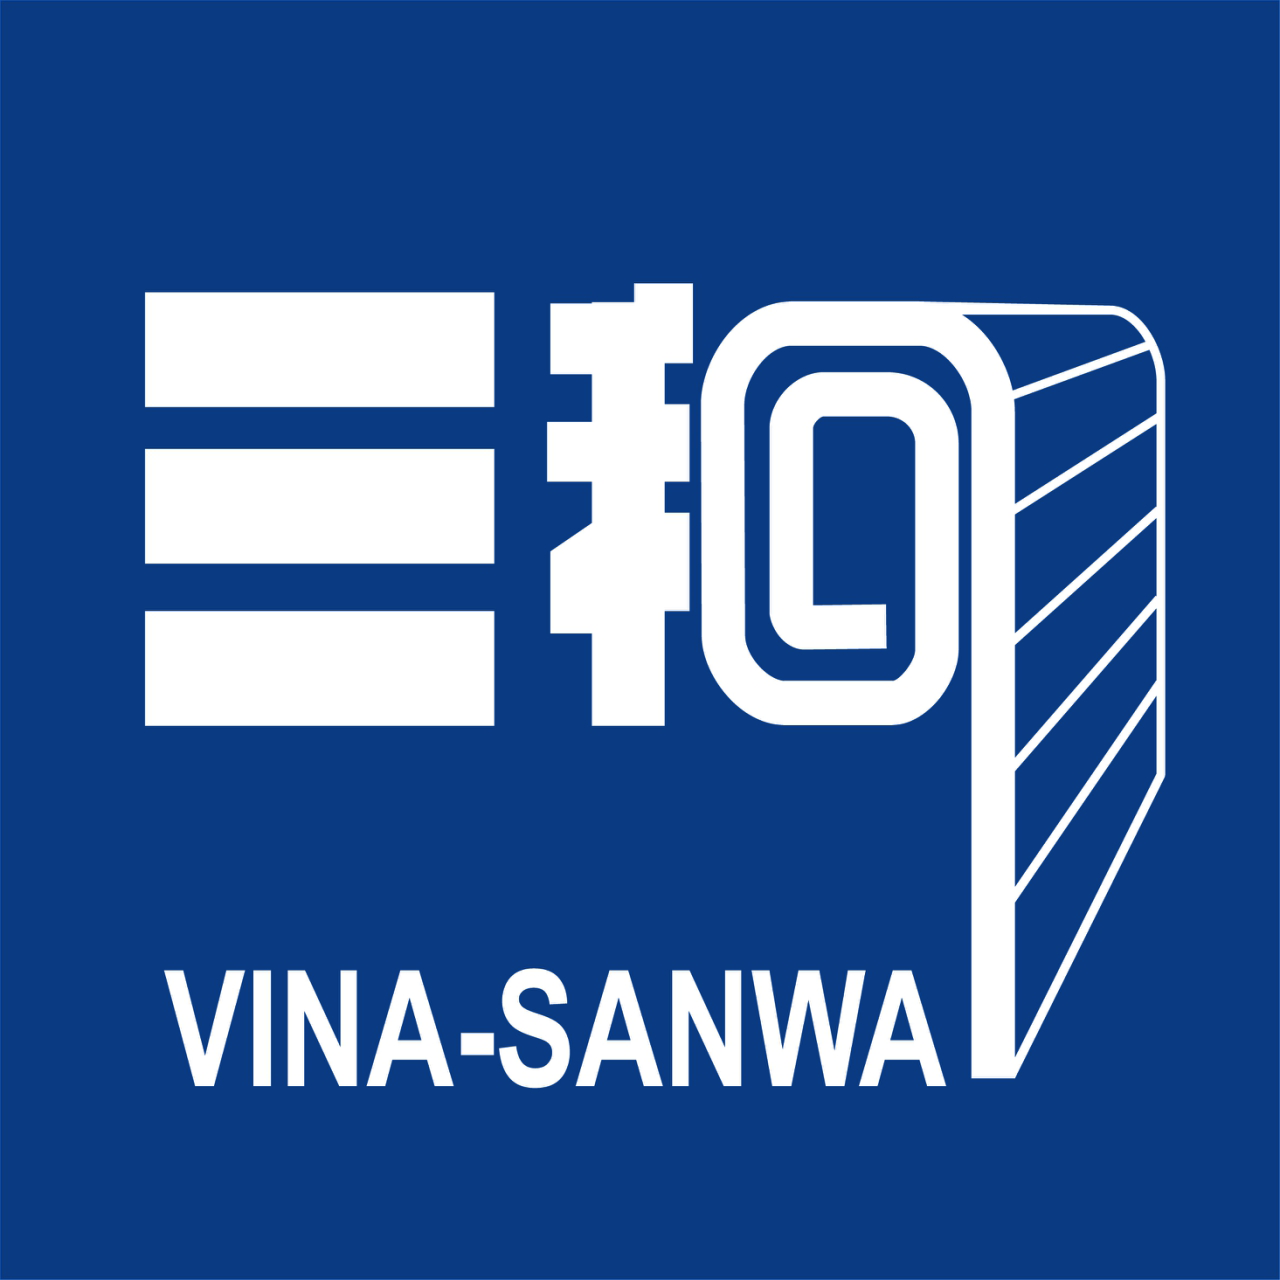 VINA-SANWA